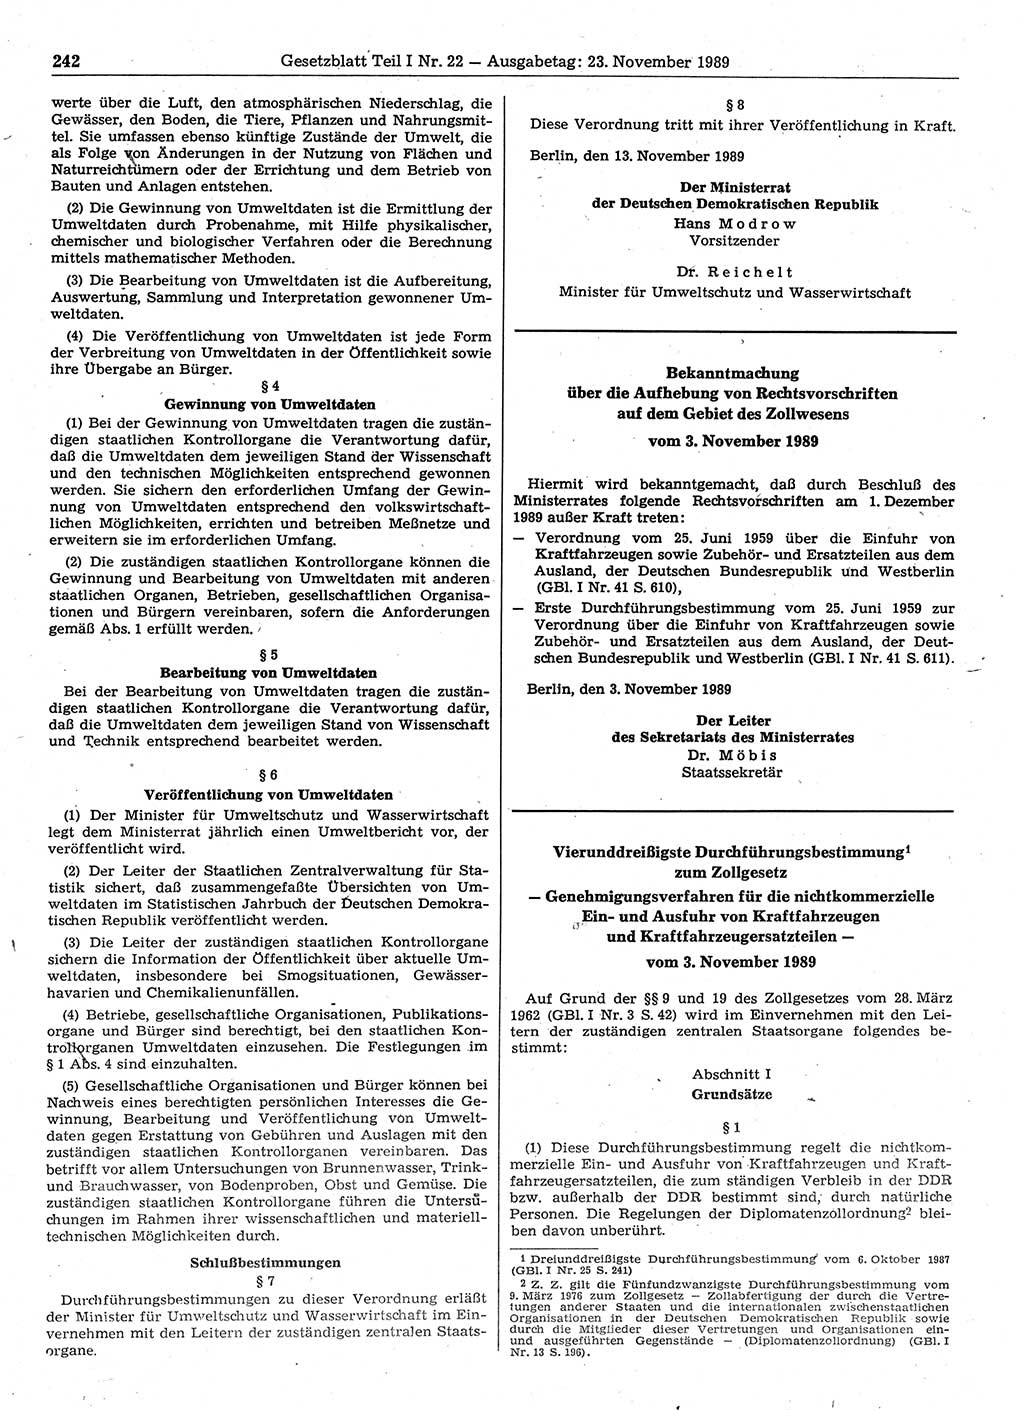 Gesetzblatt (GBl.) der Deutschen Demokratischen Republik (DDR) Teil Ⅰ 1989, Seite 242 (GBl. DDR Ⅰ 1989, S. 242)